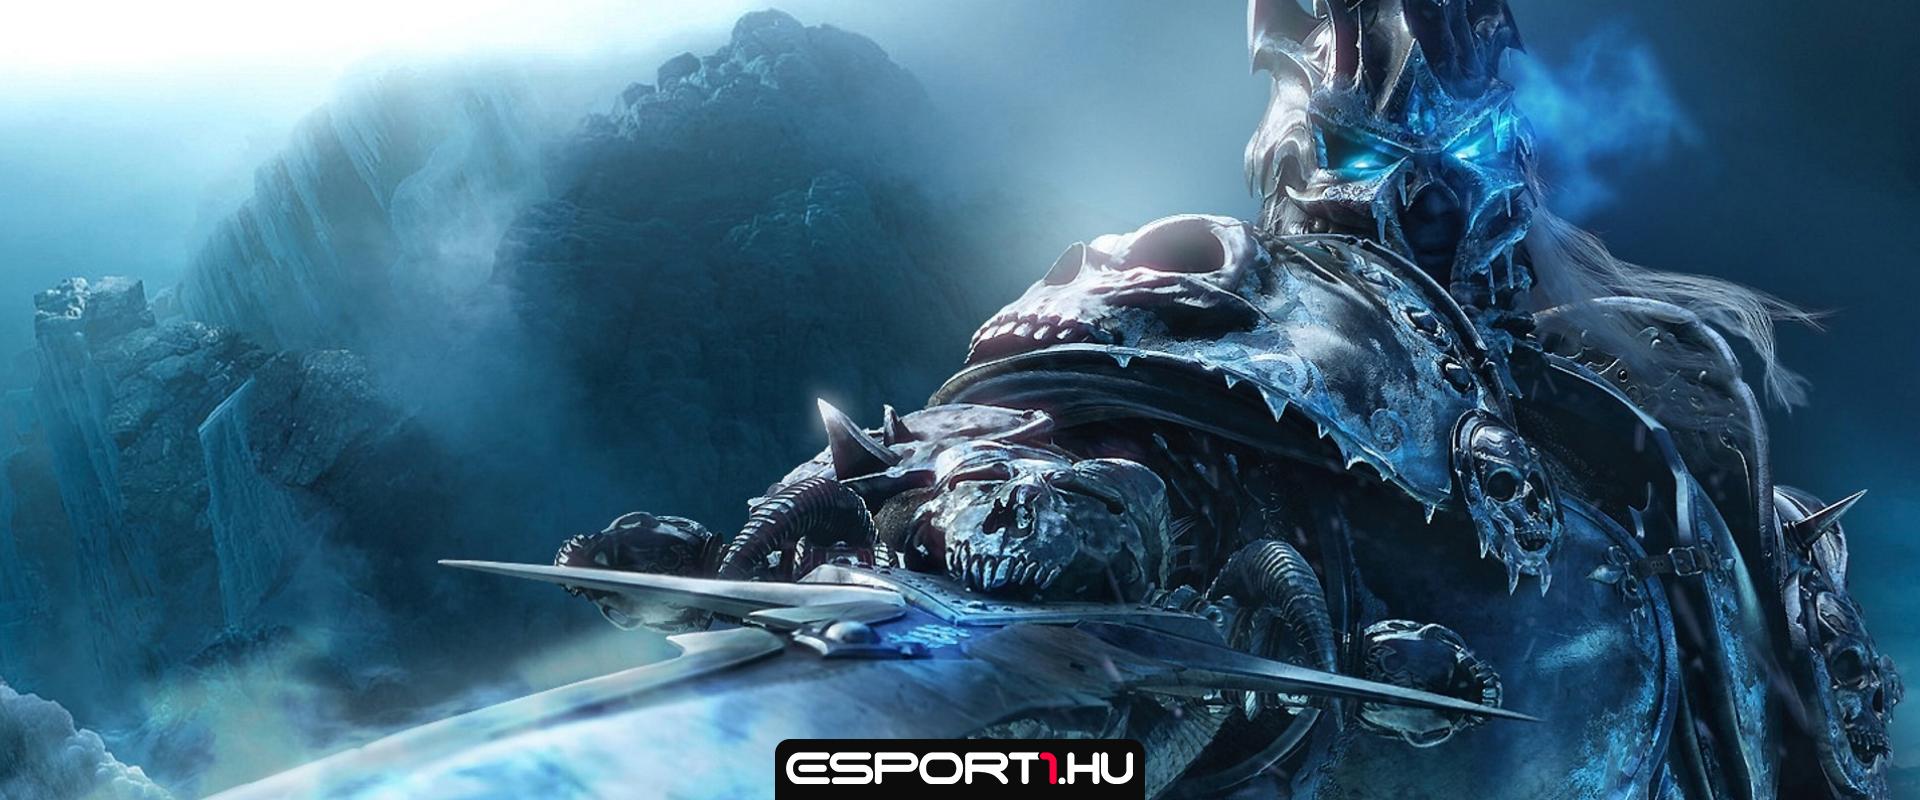 Elindult a magyar World of Warcraft világrekord kísérlet!